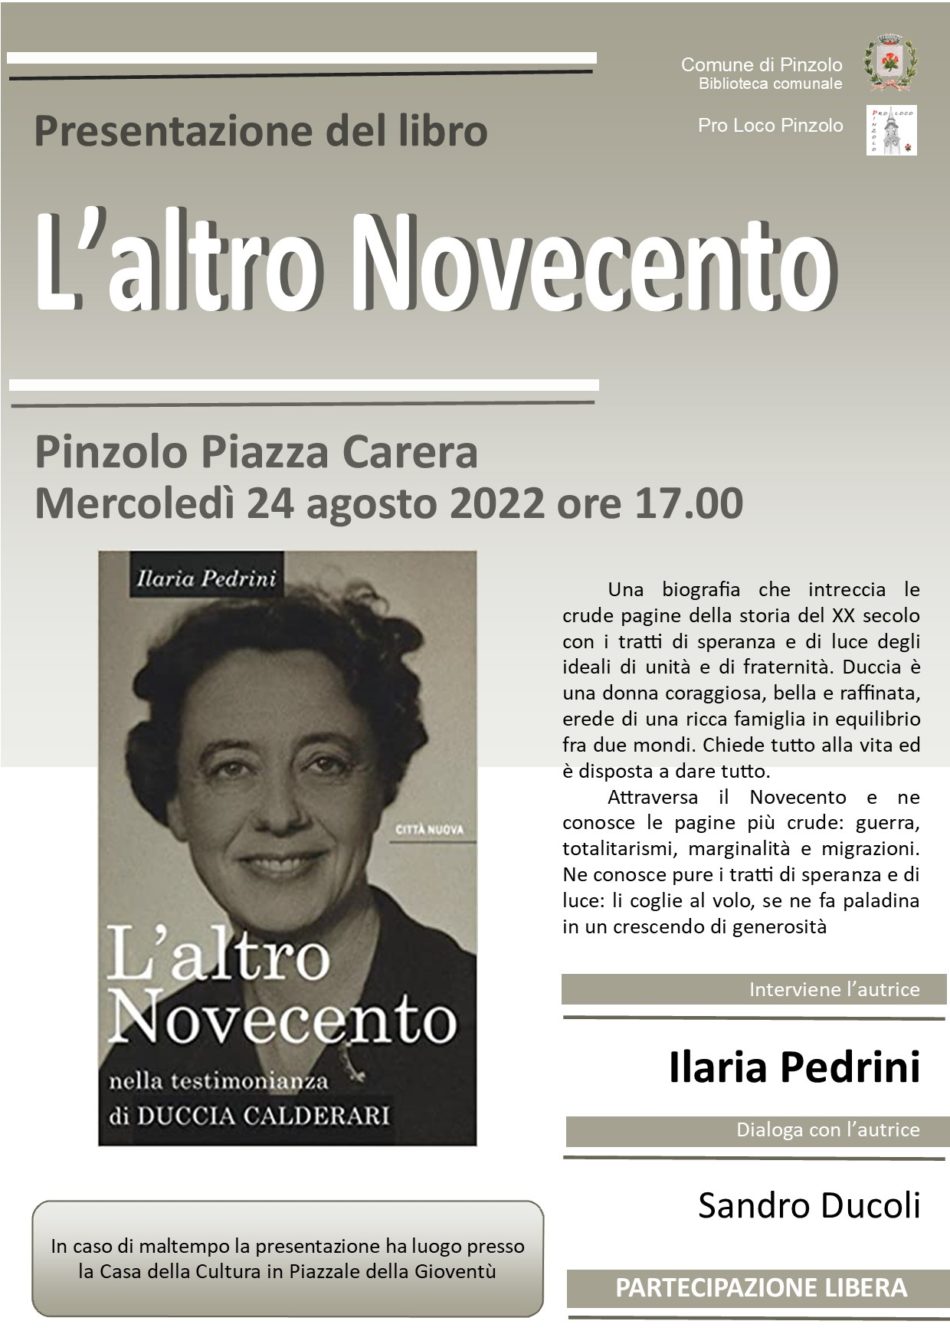 Il 24 agosto, a Pinzolo ore 17.00 in piazza Carera, Ilaria Pedrini presenterà “L’altro Novecento”